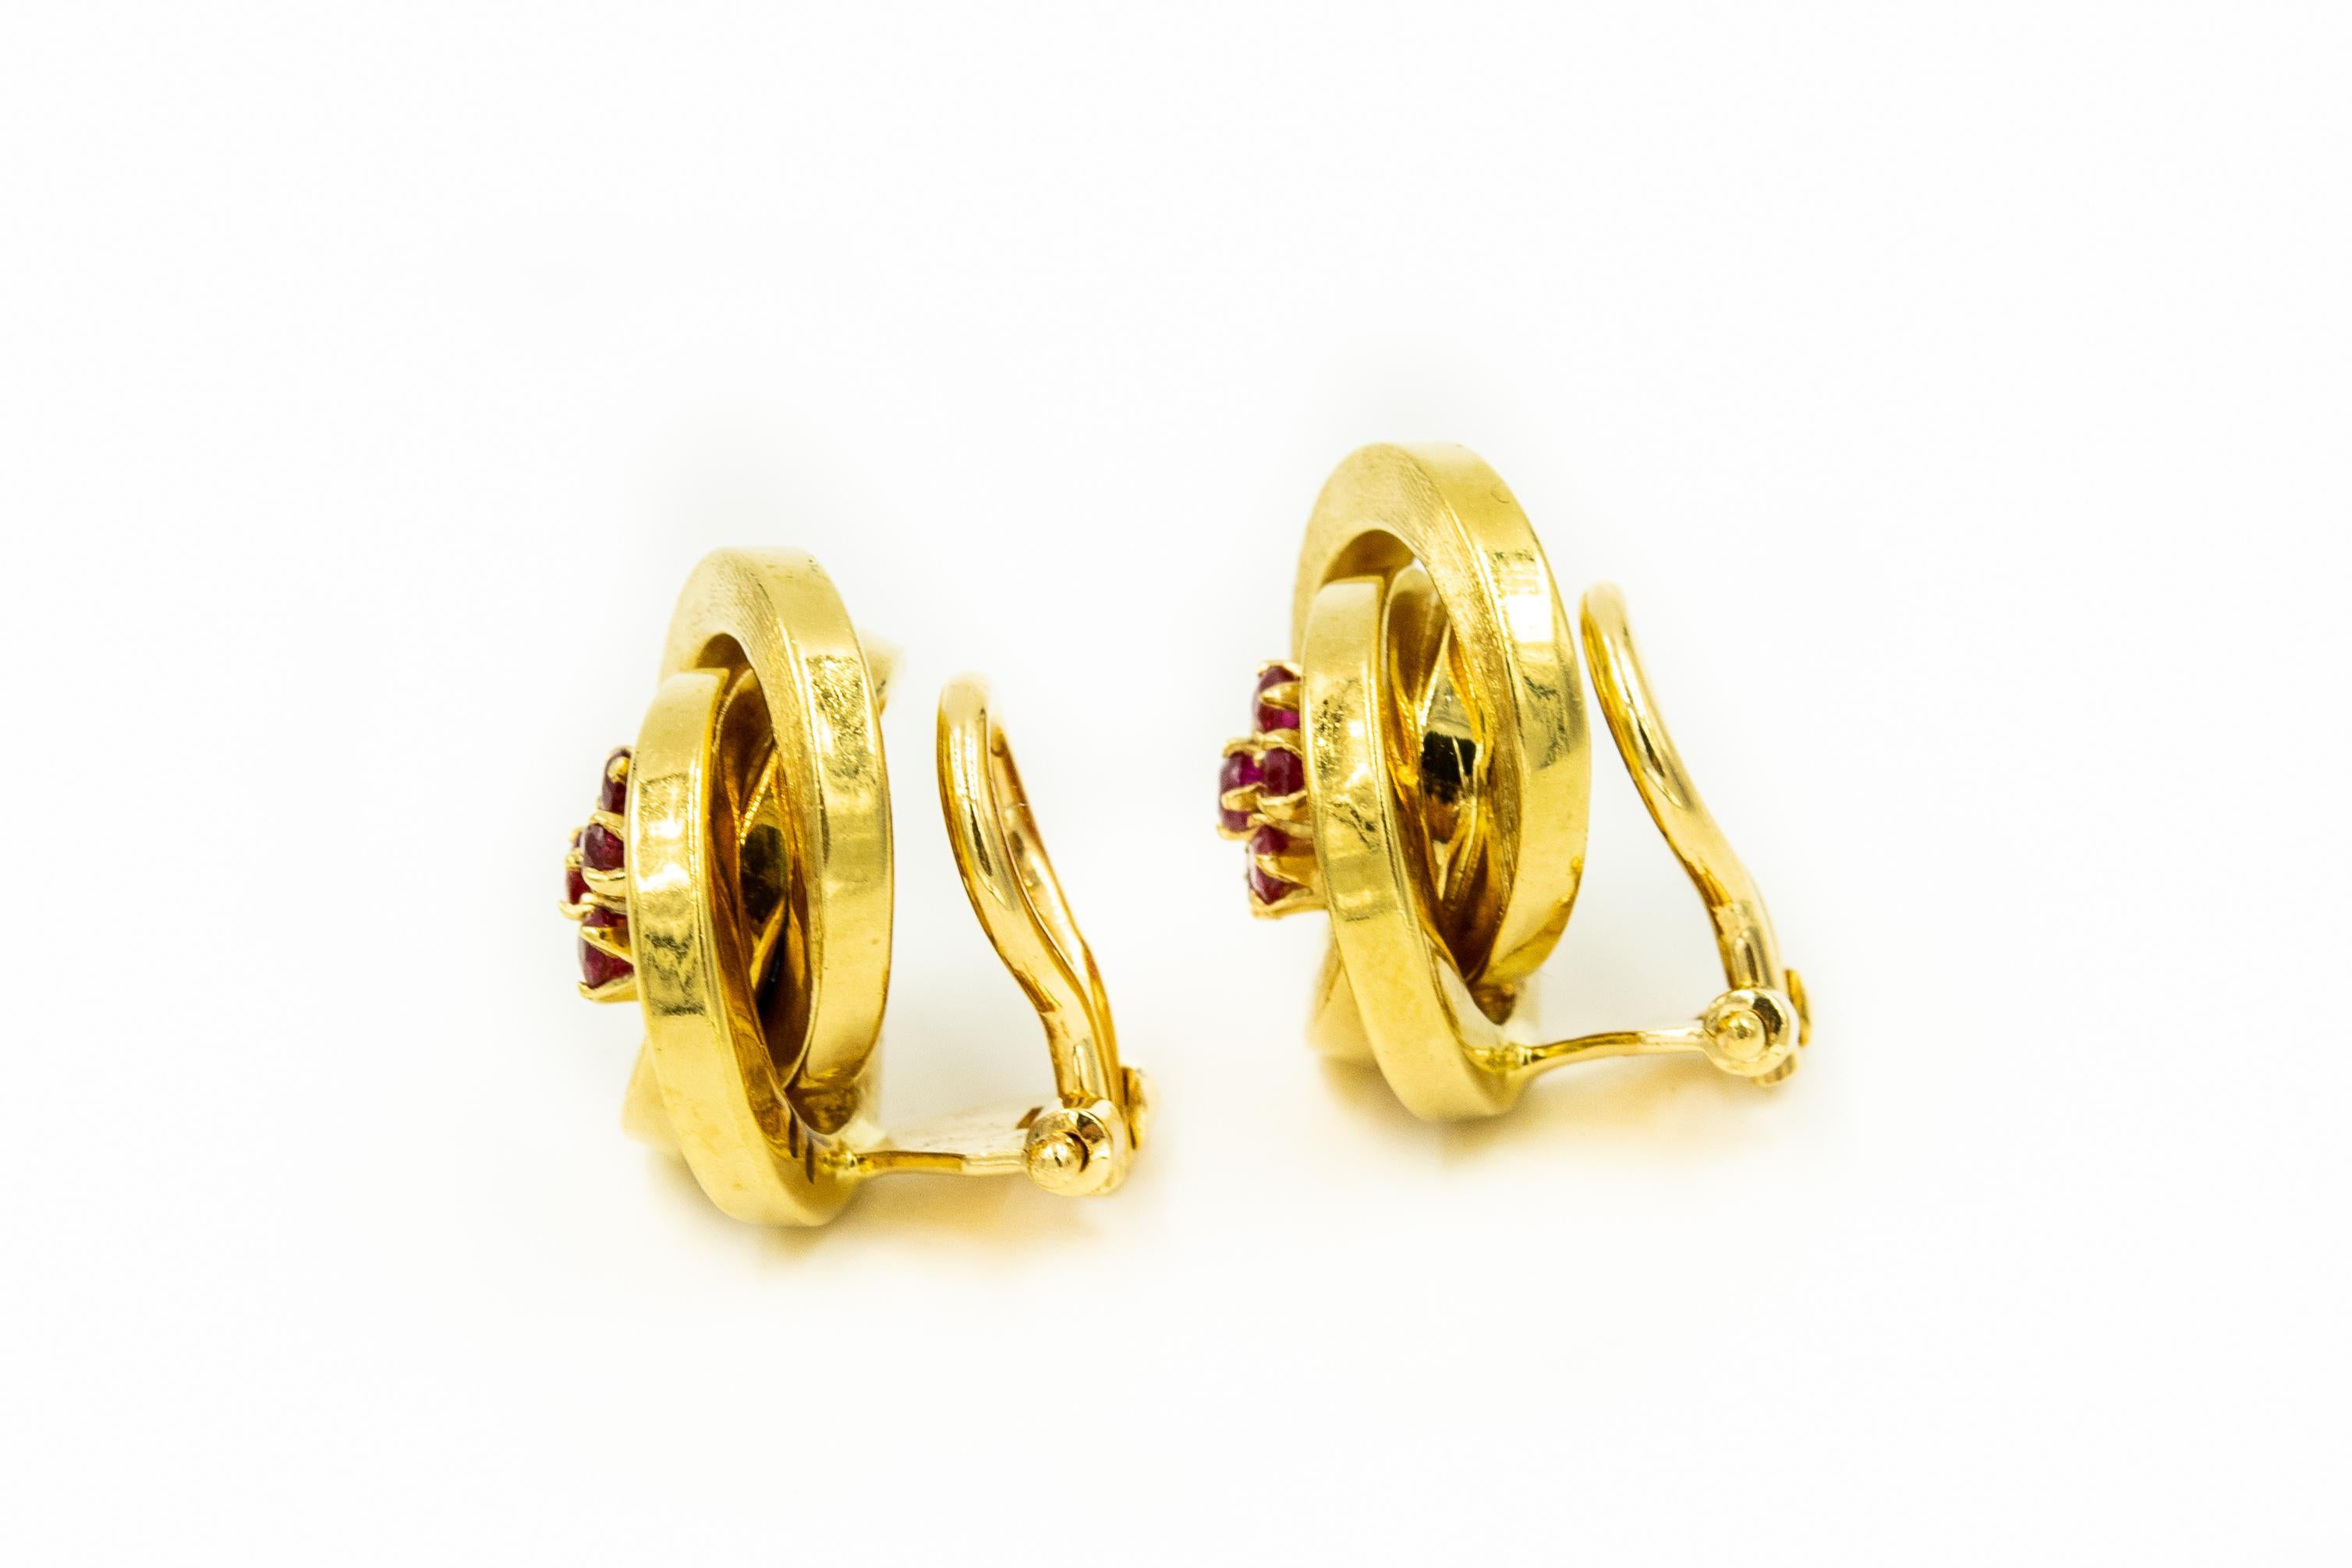 Wunderschön gearbeitete dreidimensionale italienische Ohrringe mit 3 ineinandergreifenden runden Ringen, die sich um einen Rubin in der Mitte drehen, der einer Blume ähnelt.  Die Ohrringe sind aus 18 Karat Gelbgold mit einer matten Florentiner